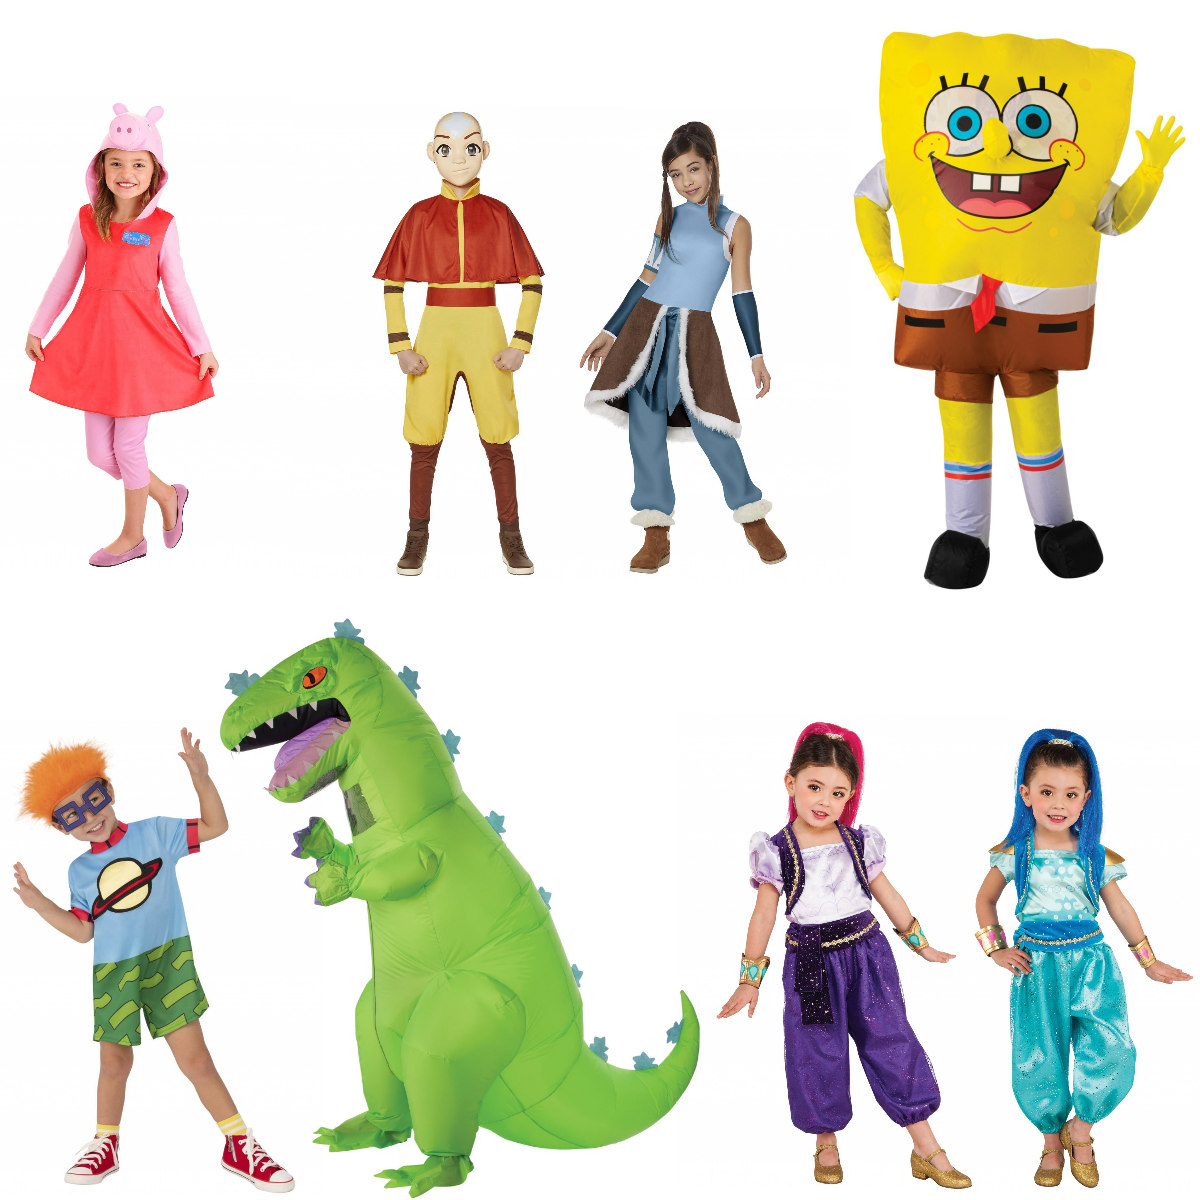 Nickelodeon Character Costumes